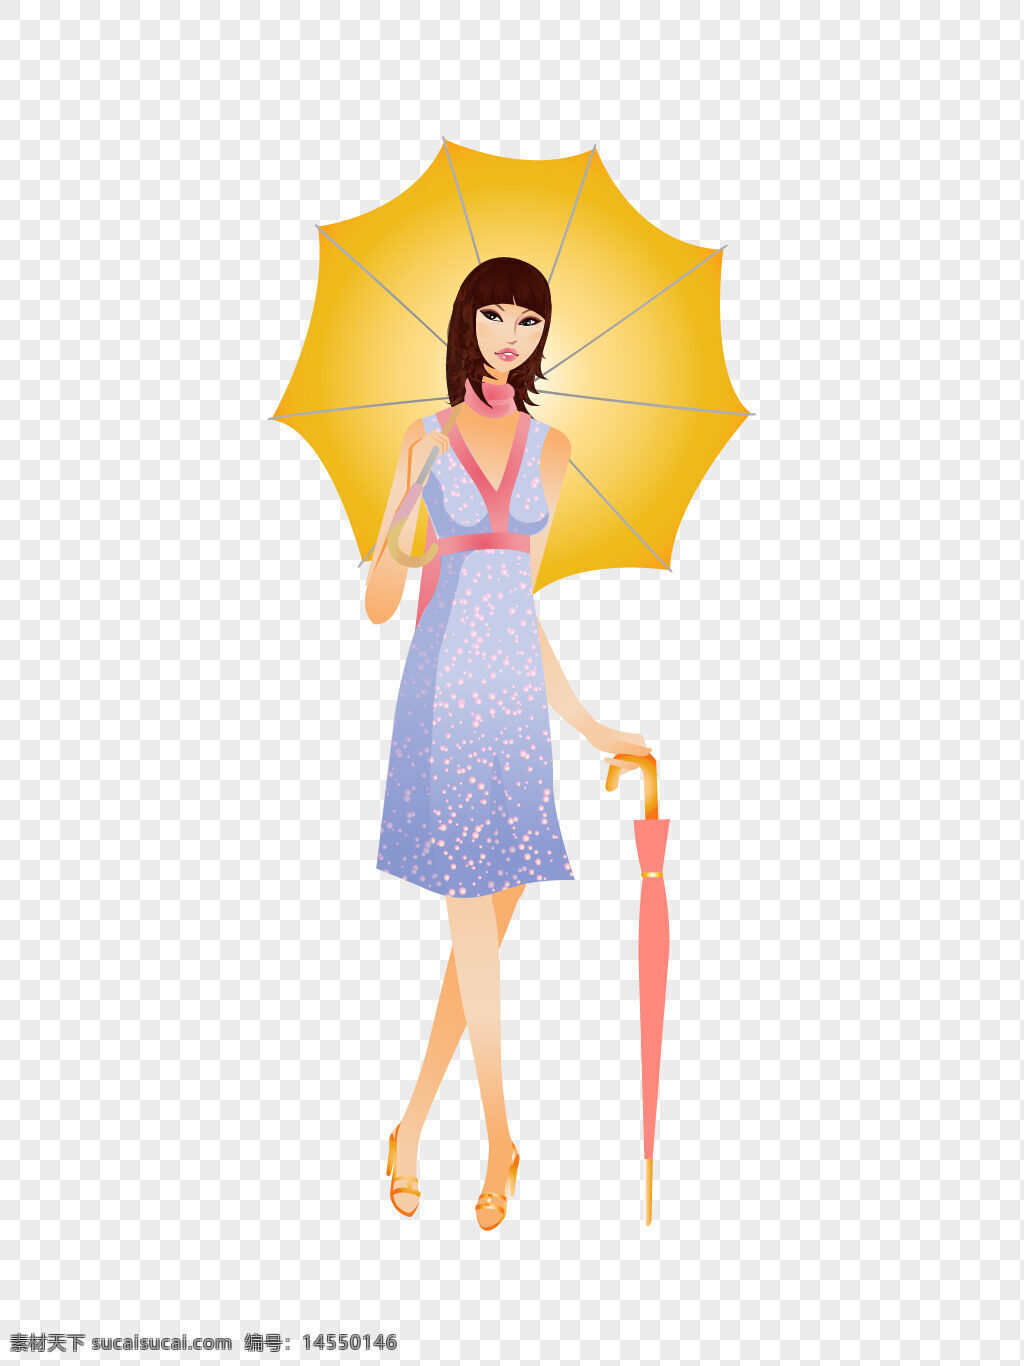 拿着伞 打伞 美女 时尚 淡蓝色 长裙 素材 拿着伞打伞 淡蓝色长裙素材 蓝色长裙 蓝色 拿着伞打伞的美女时尚淡蓝色长裙素材